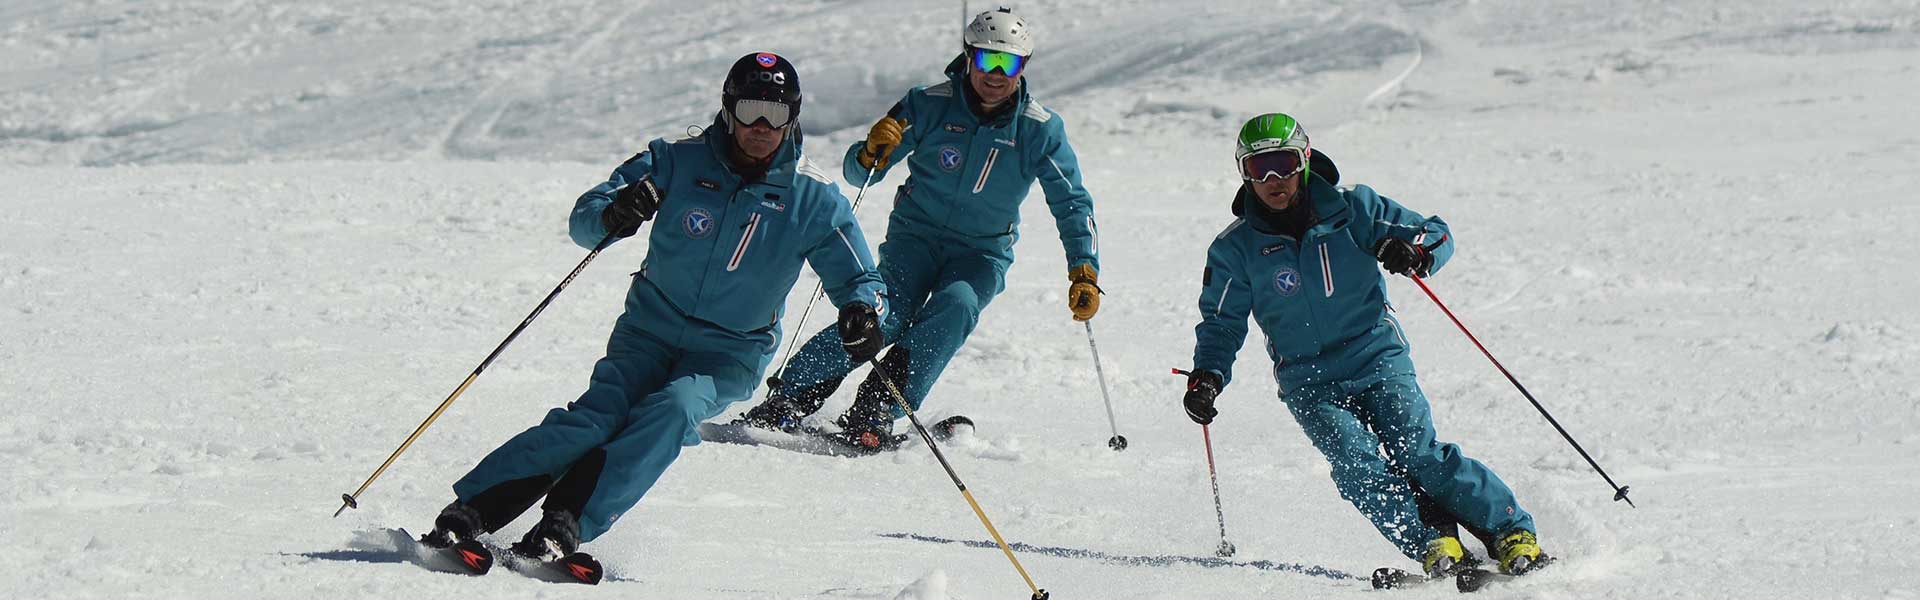 Ski Total | Escuela de ski snowboard - Cerro Catedral Bariloche